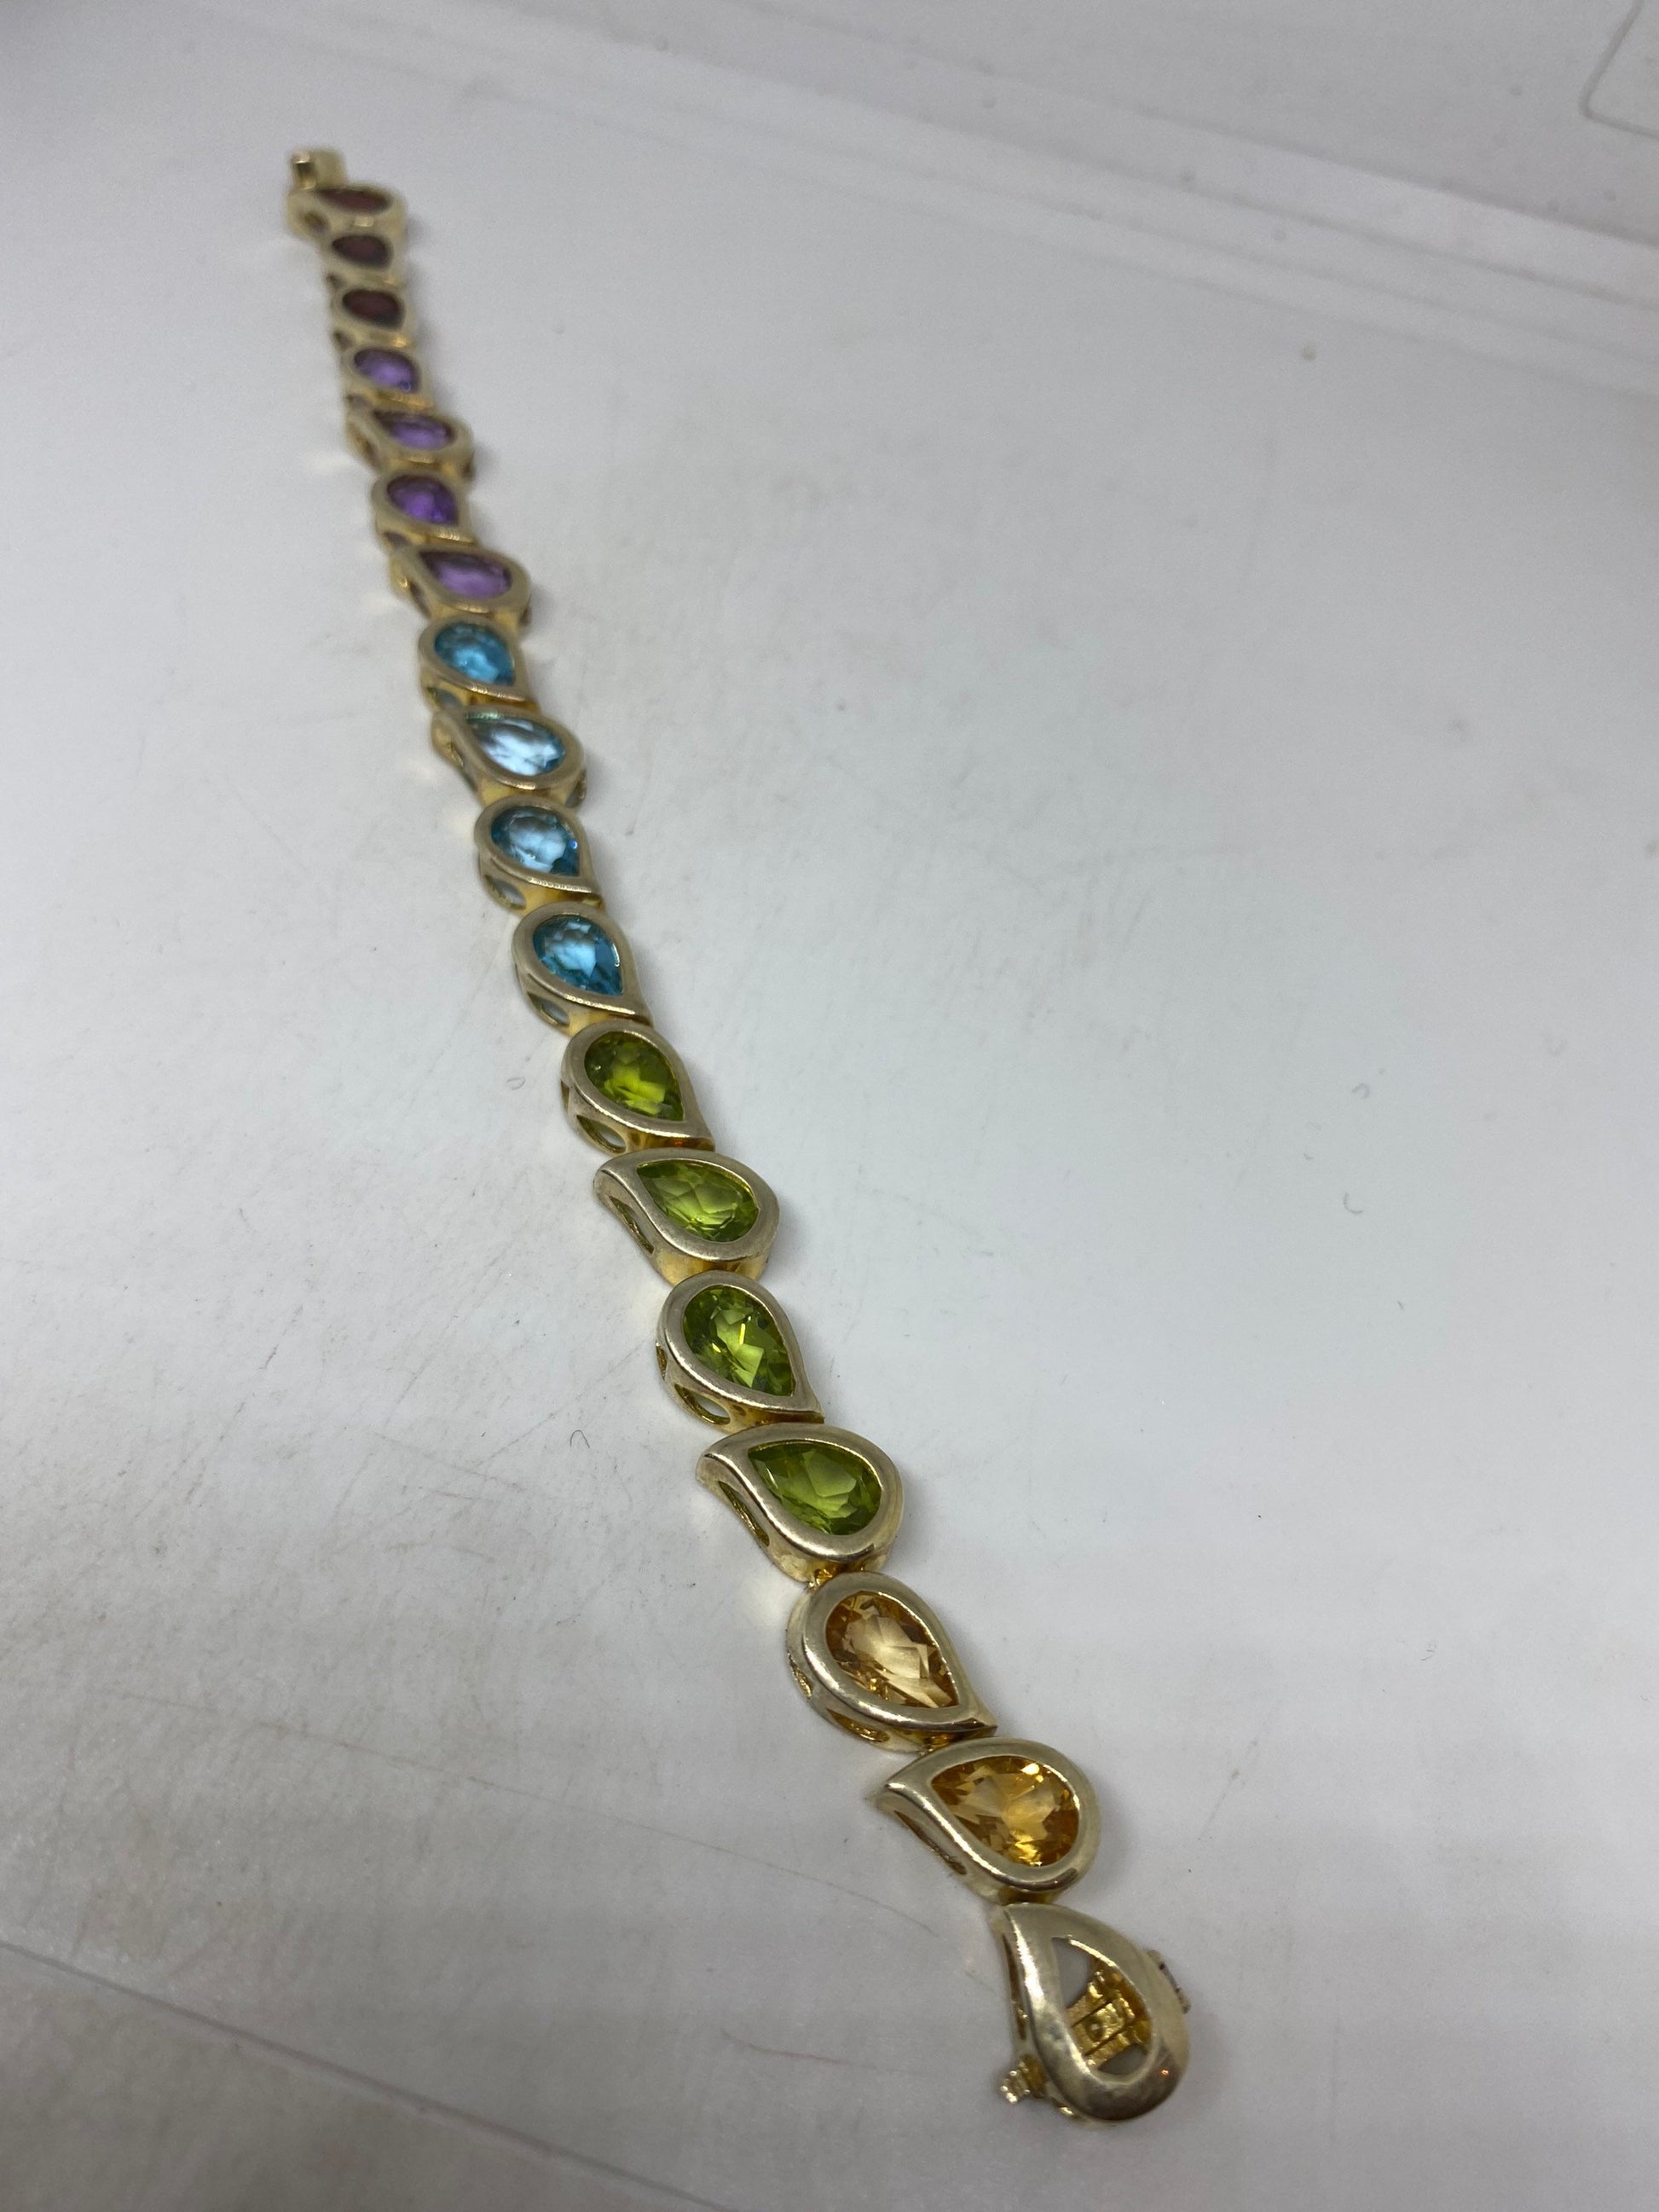 Vintage Genuine Mixed Gemstones Sterling Silver Tennis Bracelet